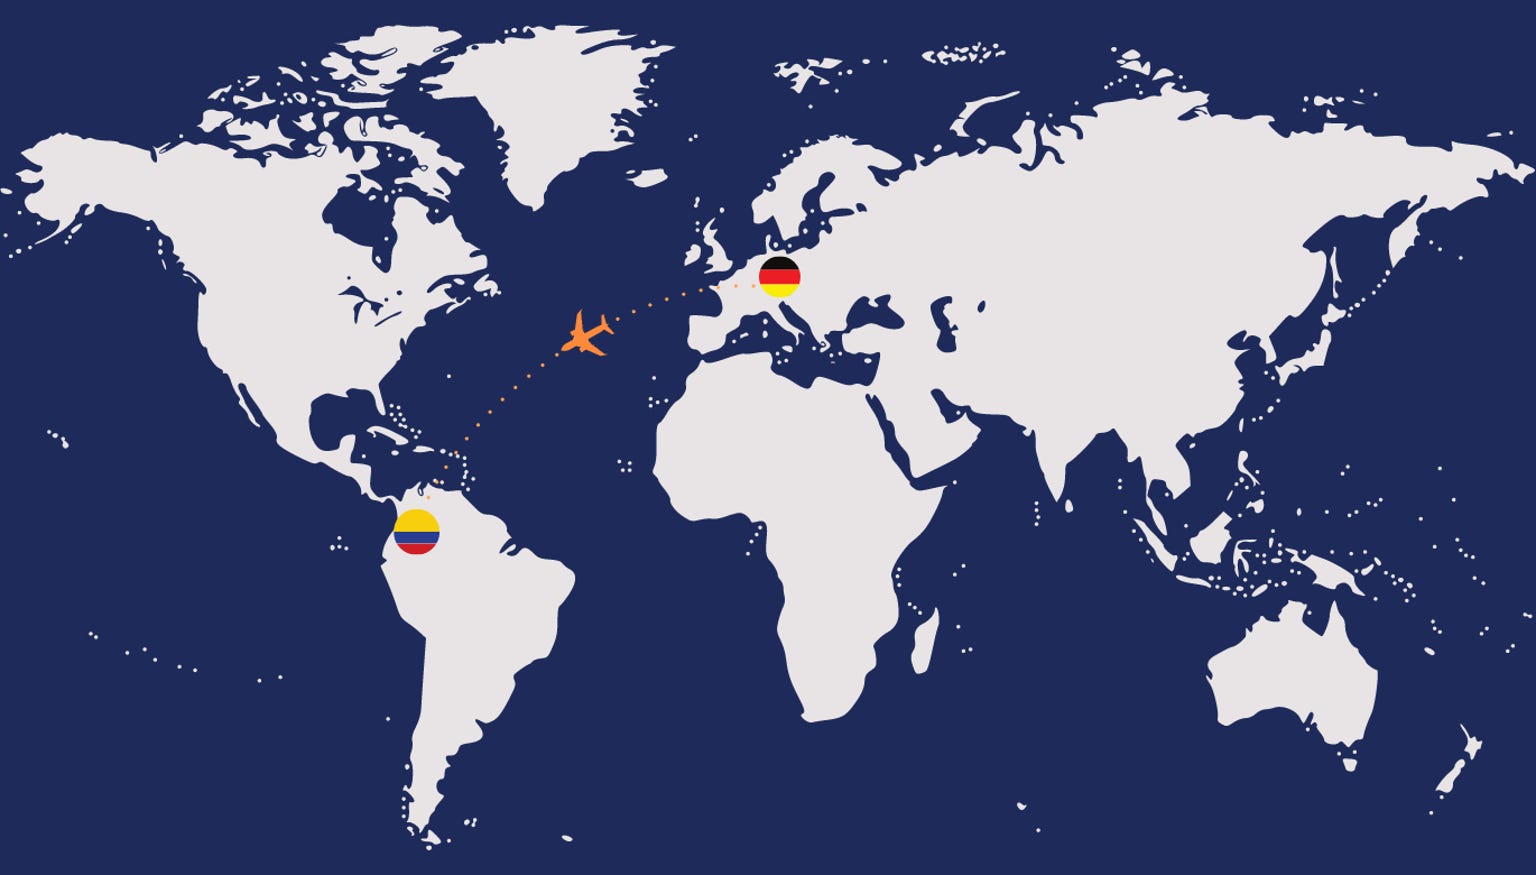 Imagen para web con viaje desde alemania hasta colombia